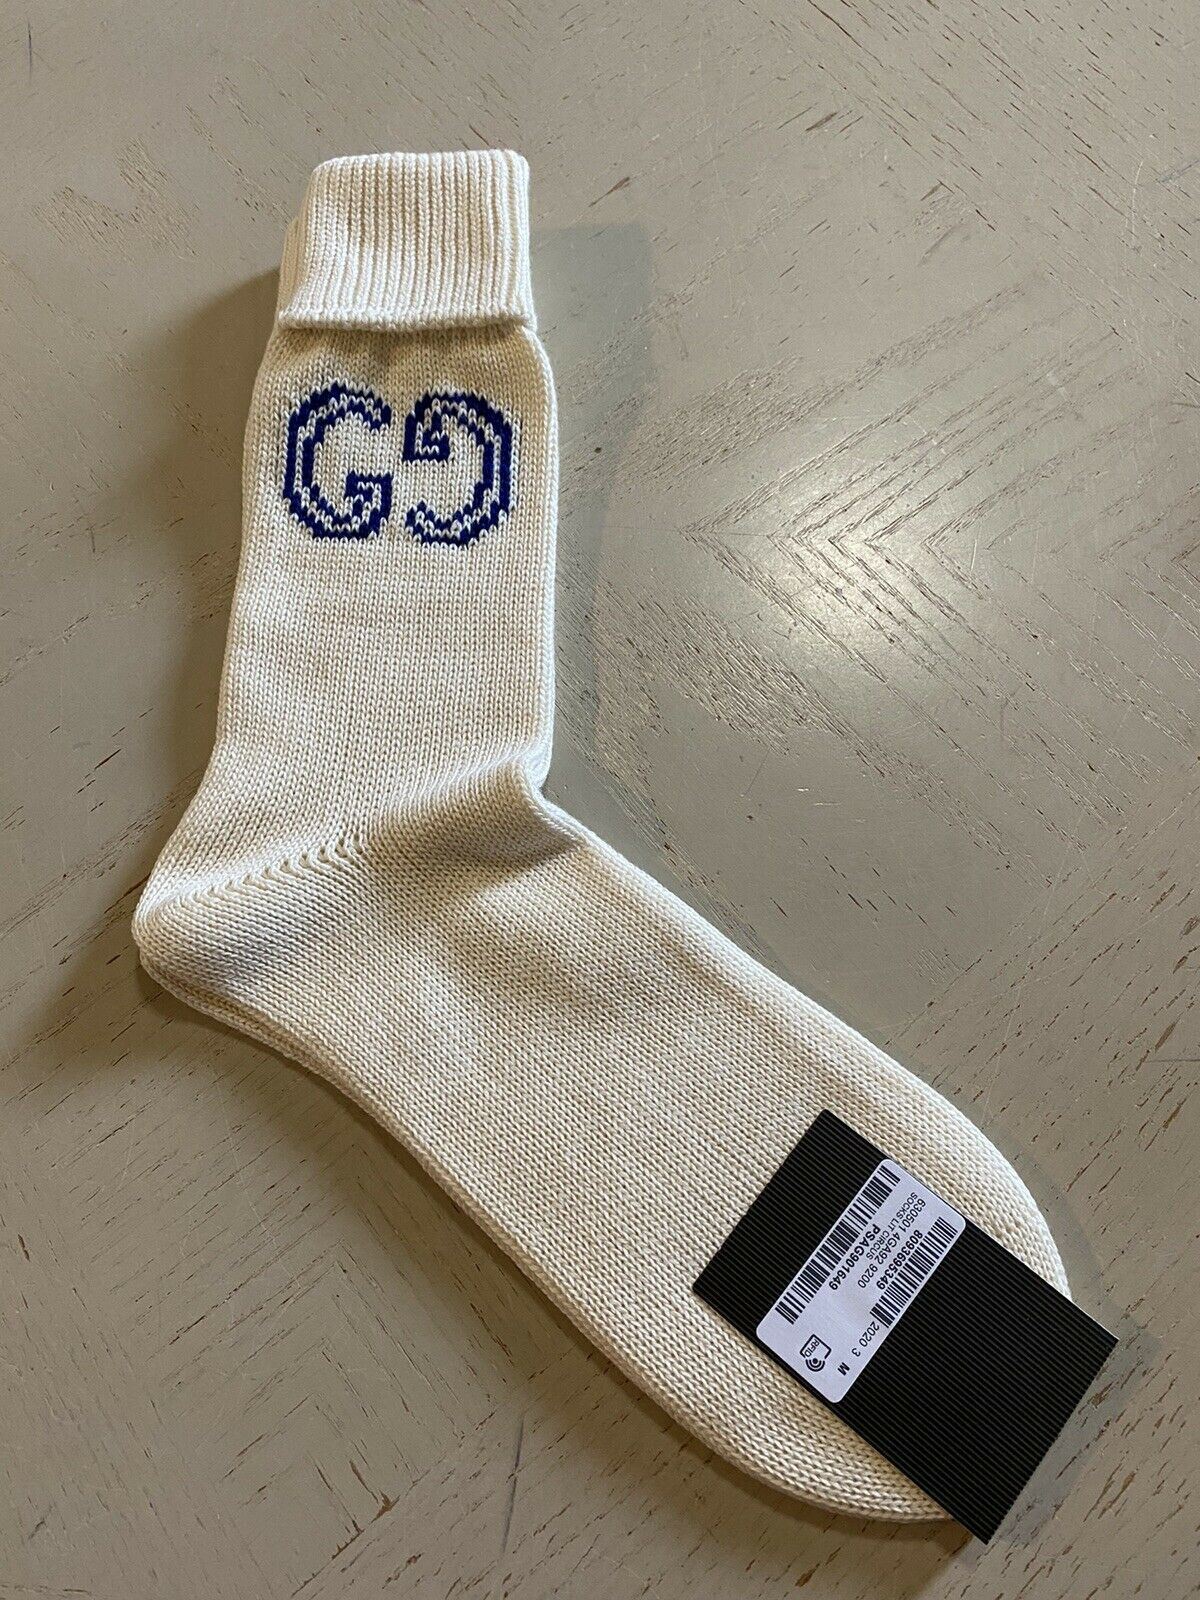 Neu mit Etikett: Gucci Herren-Baumwollsocken mit GG-Monogramm, Elfenbein, Größe M, Italien